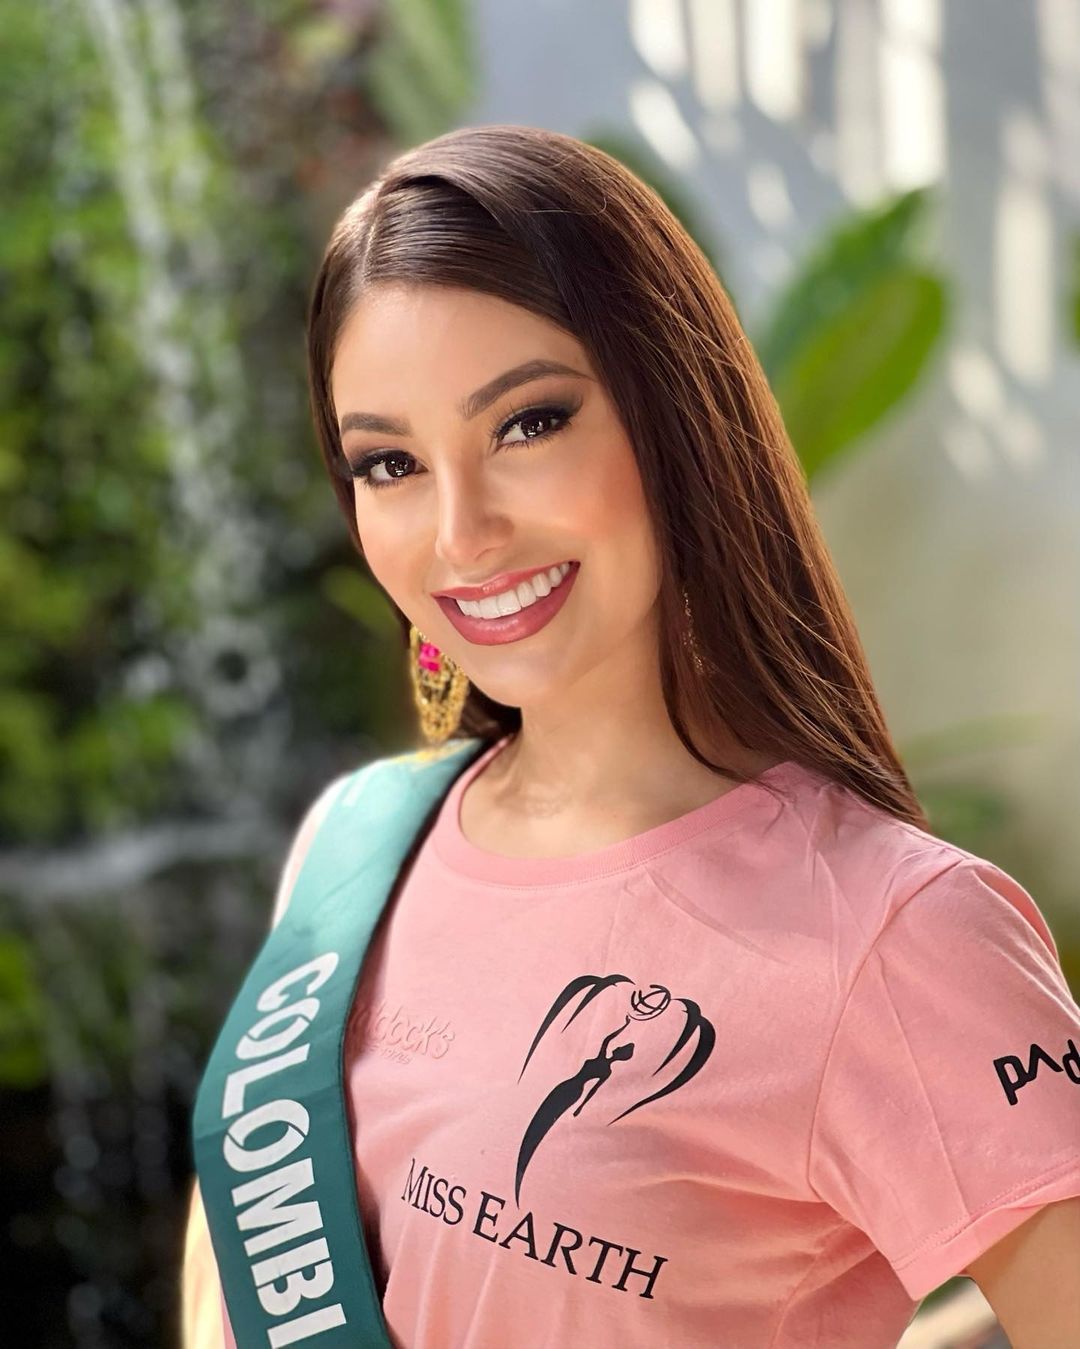 Miss Earth Colombia - Ứng cử viên sáng giá hàng đầu cho ngôi vị Hoa hậu Trái đất 2022 - Ảnh 6.